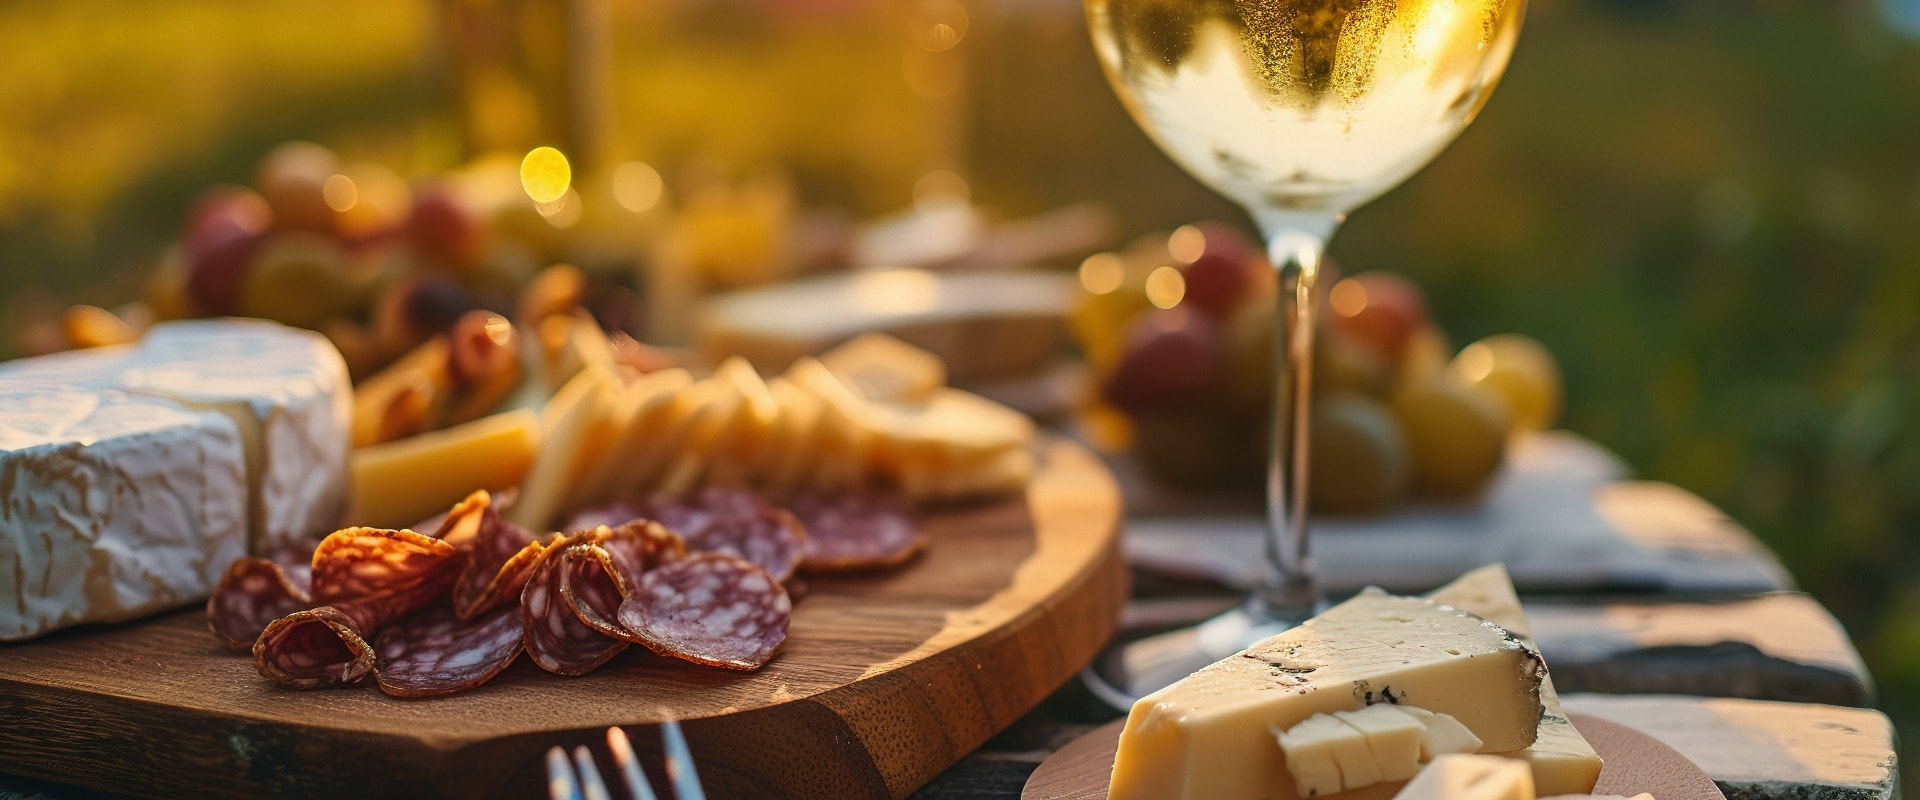 Picknick mit Weißwein, serviert im Freien mit Käse und Wurstwaren, Sonnenuntergangslicht